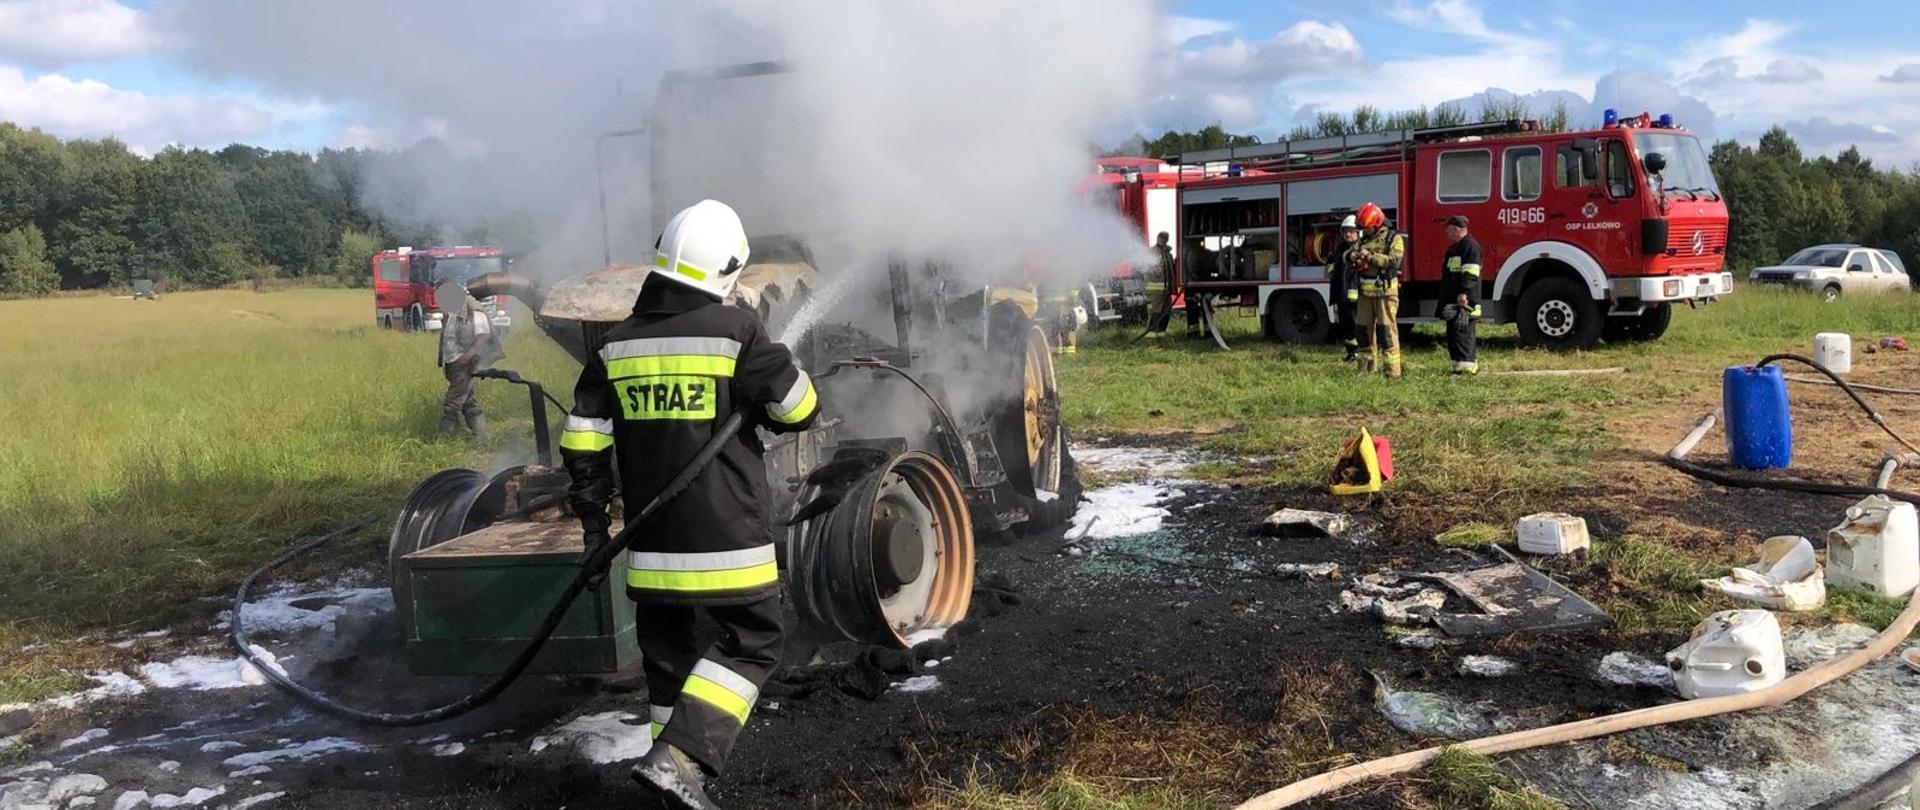 Trwa dogaszanie spalonego traktora rolniczego na polu. Strażaka z wężem polewa wodą wrak. W oddali samochody strażackie.
